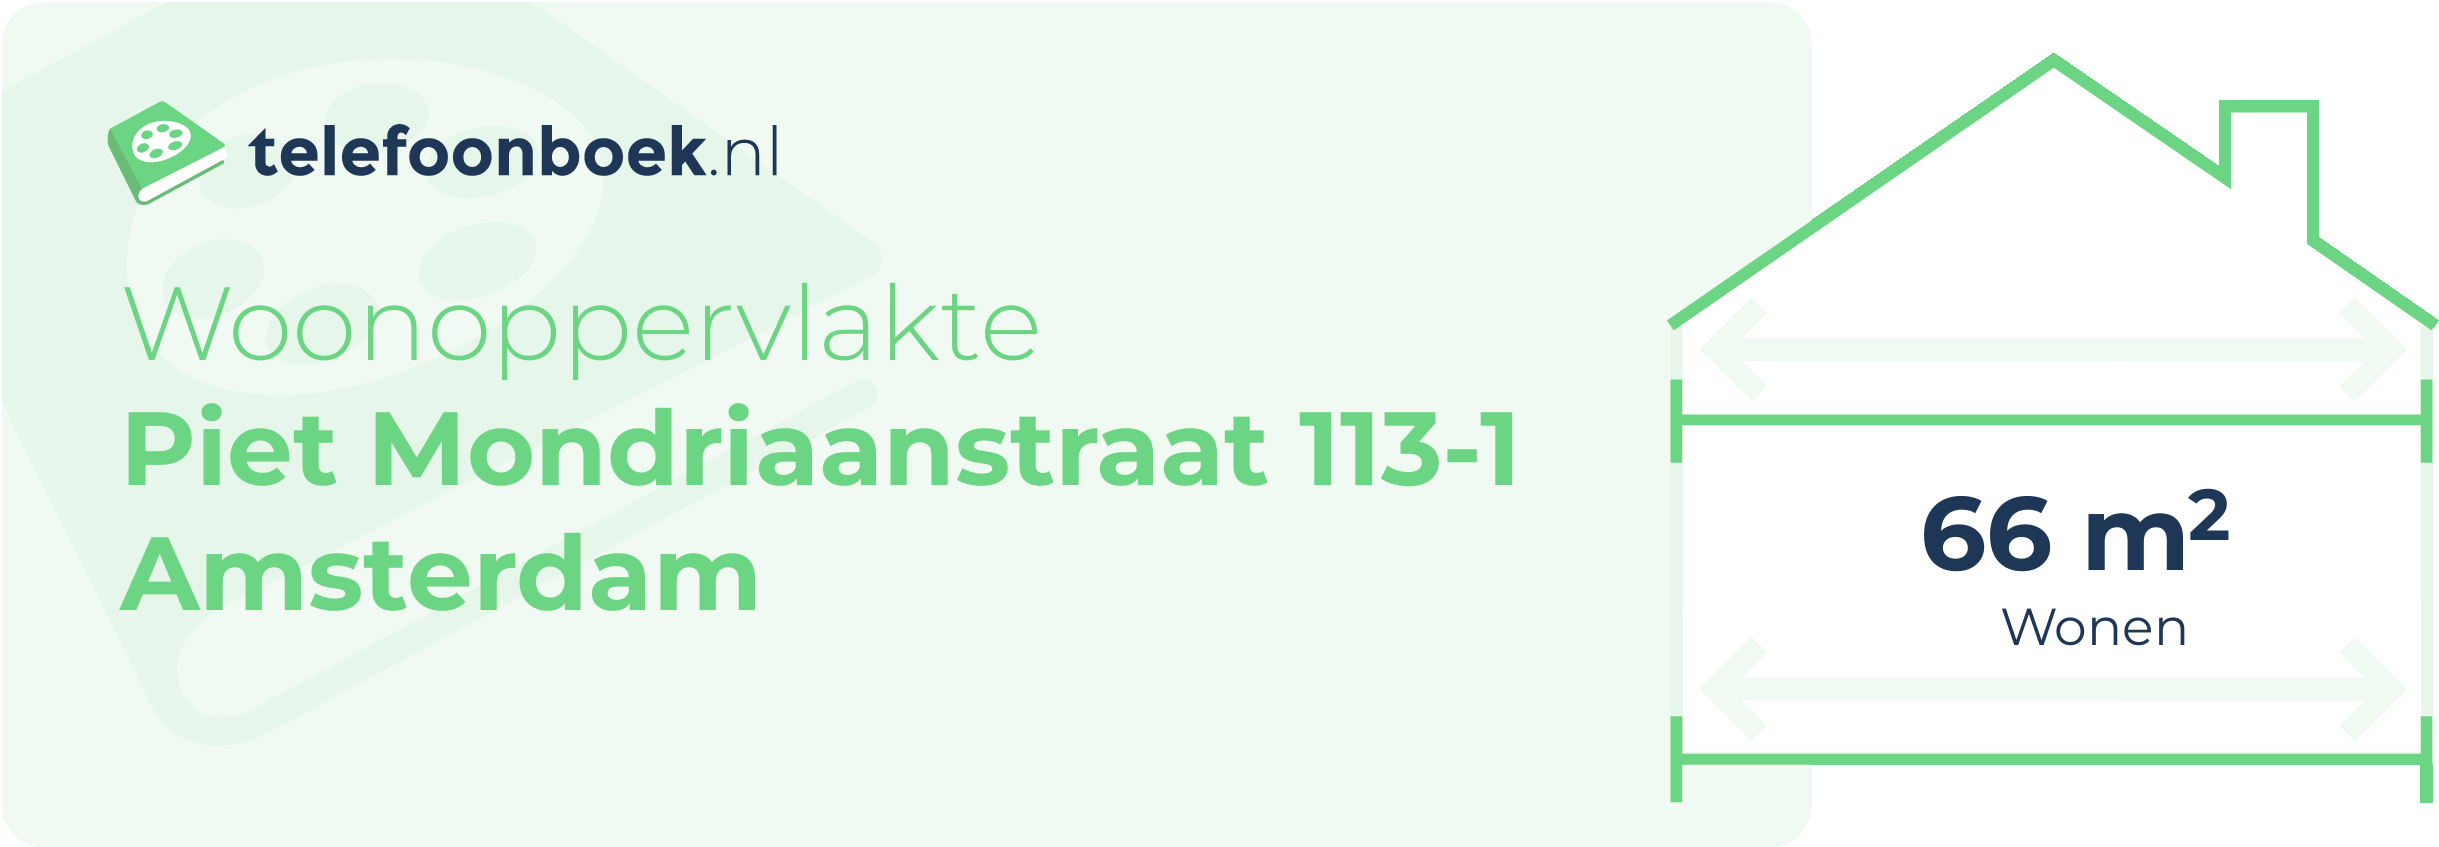 Woonoppervlakte Piet Mondriaanstraat 113-1 Amsterdam